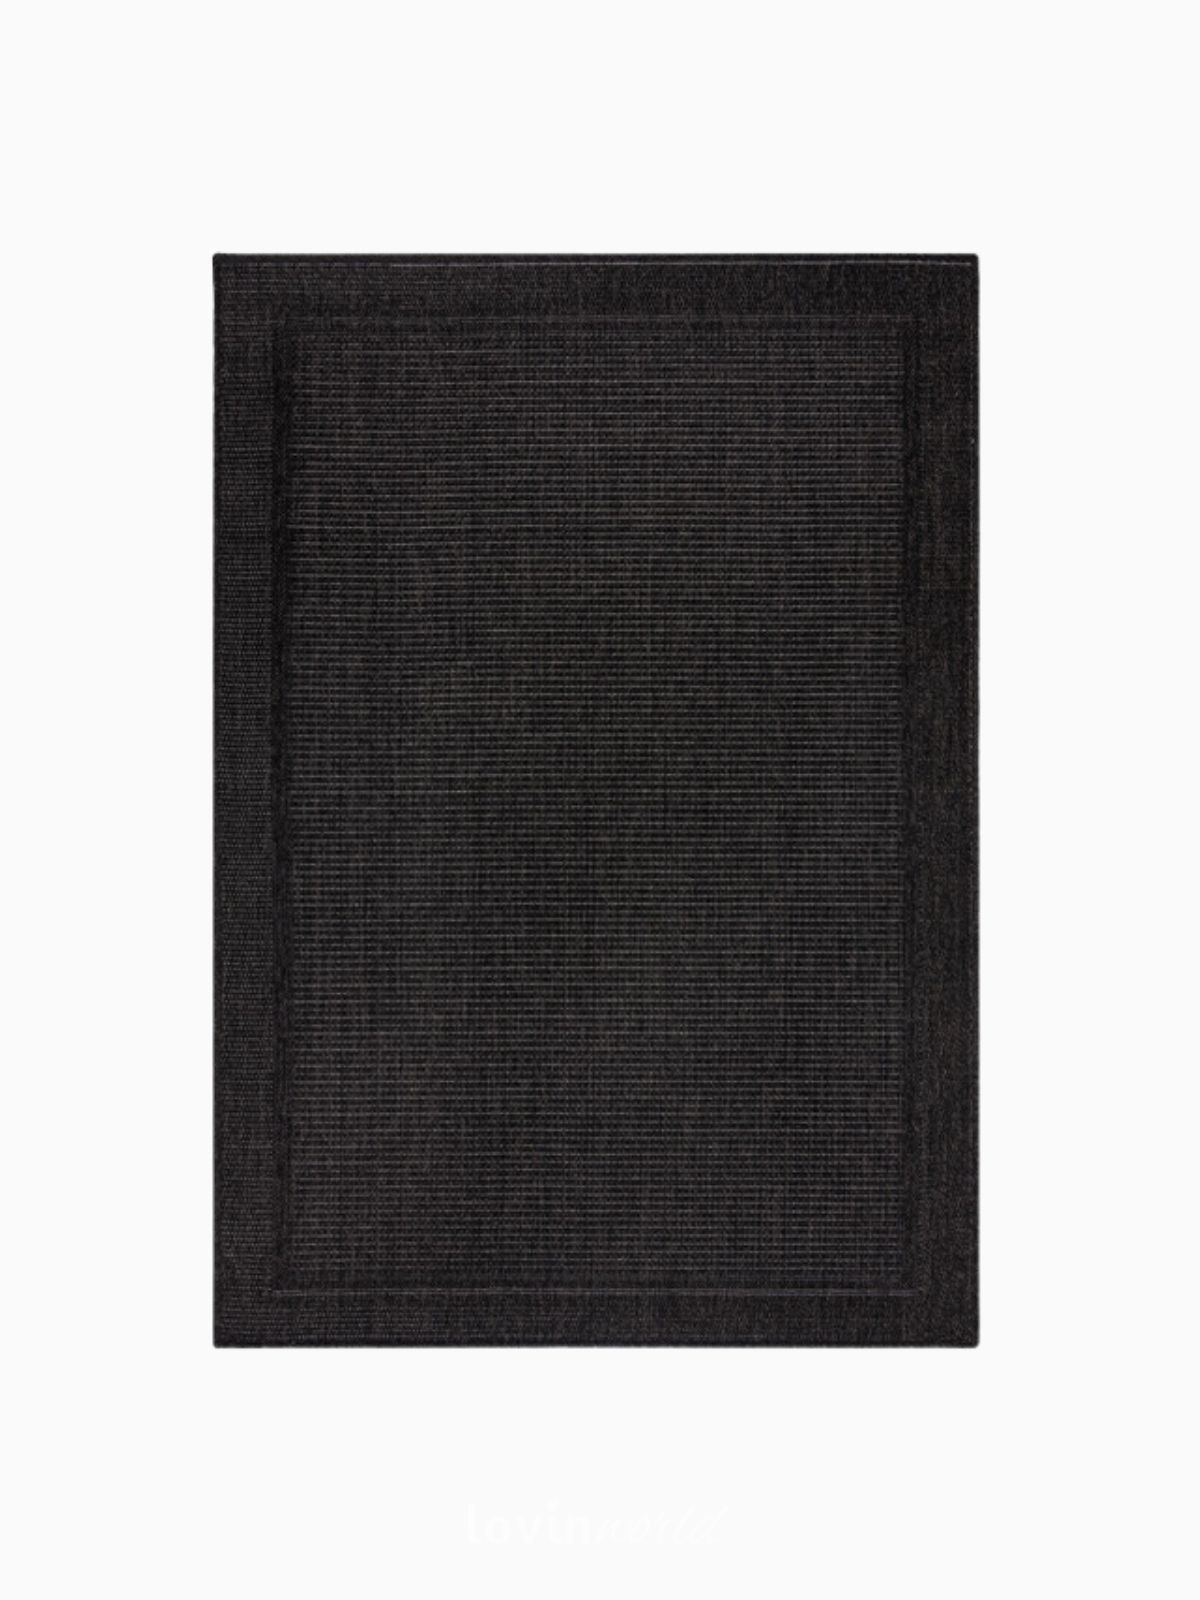 Tappeto di design Weave Outdoor in iuta, colore carbone-1